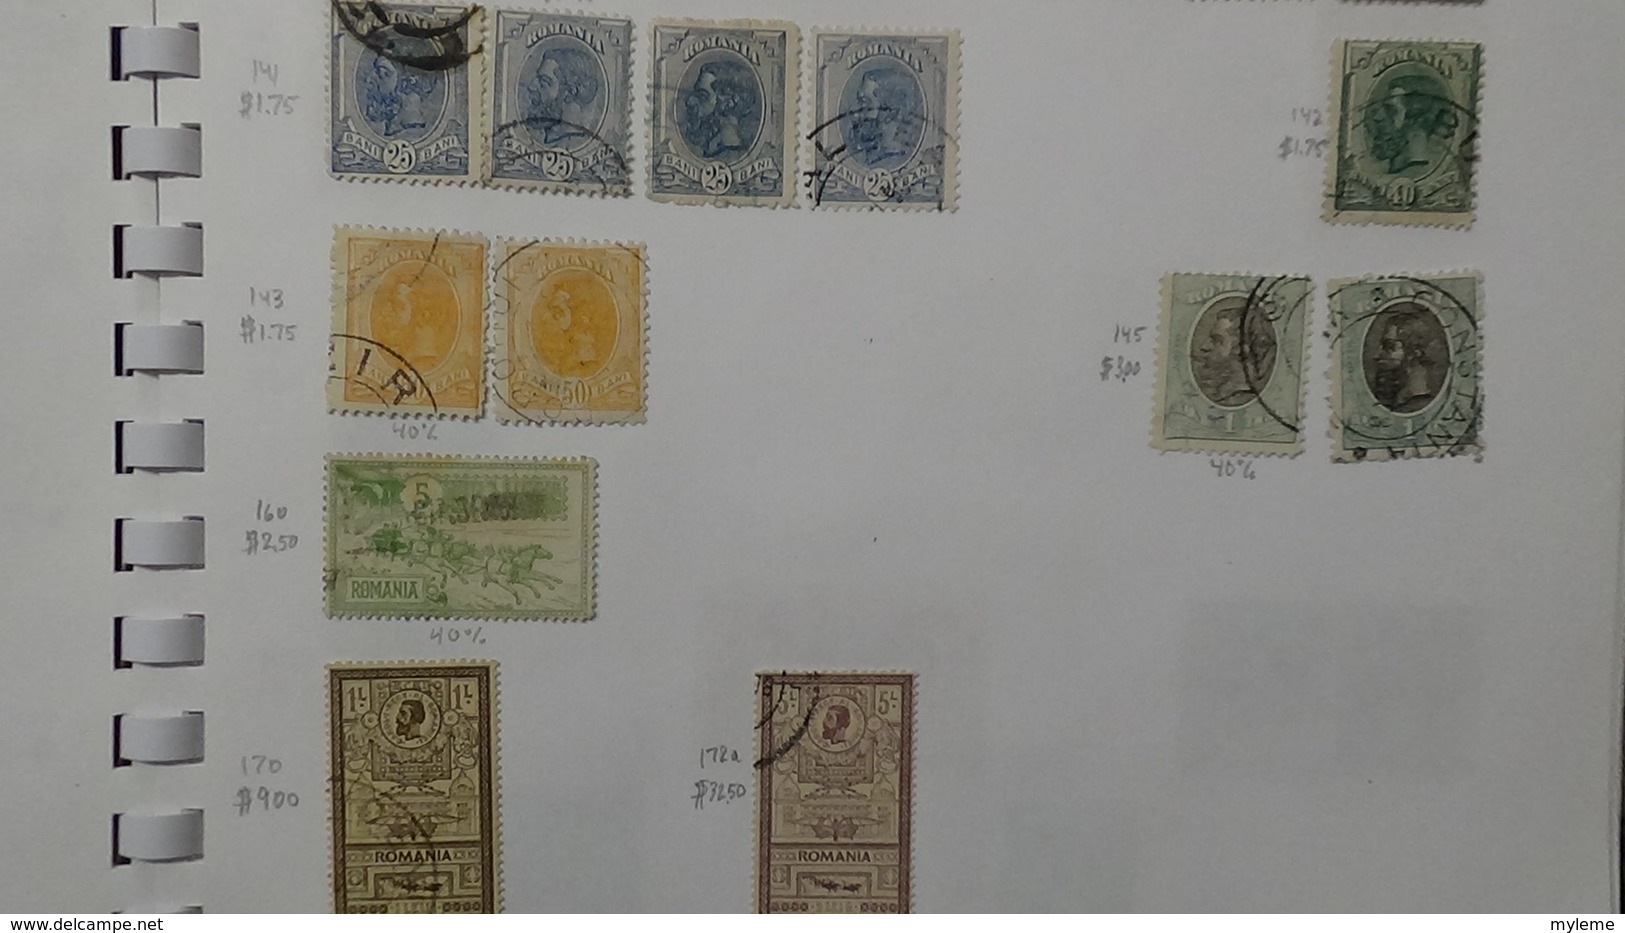 A241 Cahier de timbres de Roumanie dont fin de catalogue. A saisir !!! Voir commentaires